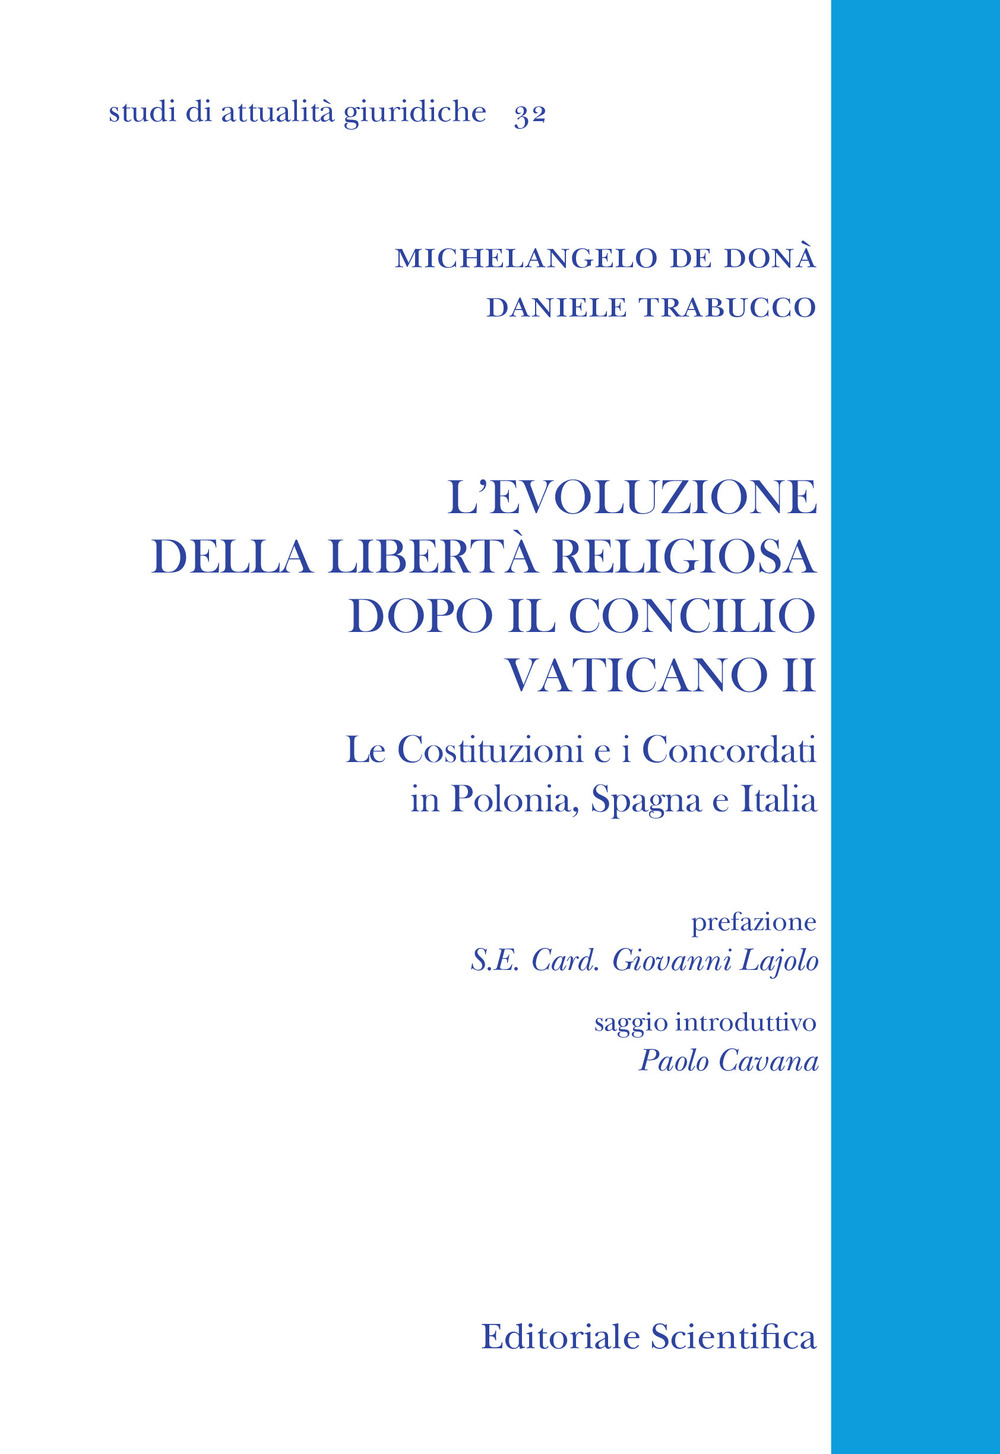 L'evoluzione della libertà religiosa dopo il Concilio Vaticano II. Le Costituzioni e i Concordati in Polonia, Spagna, Italia